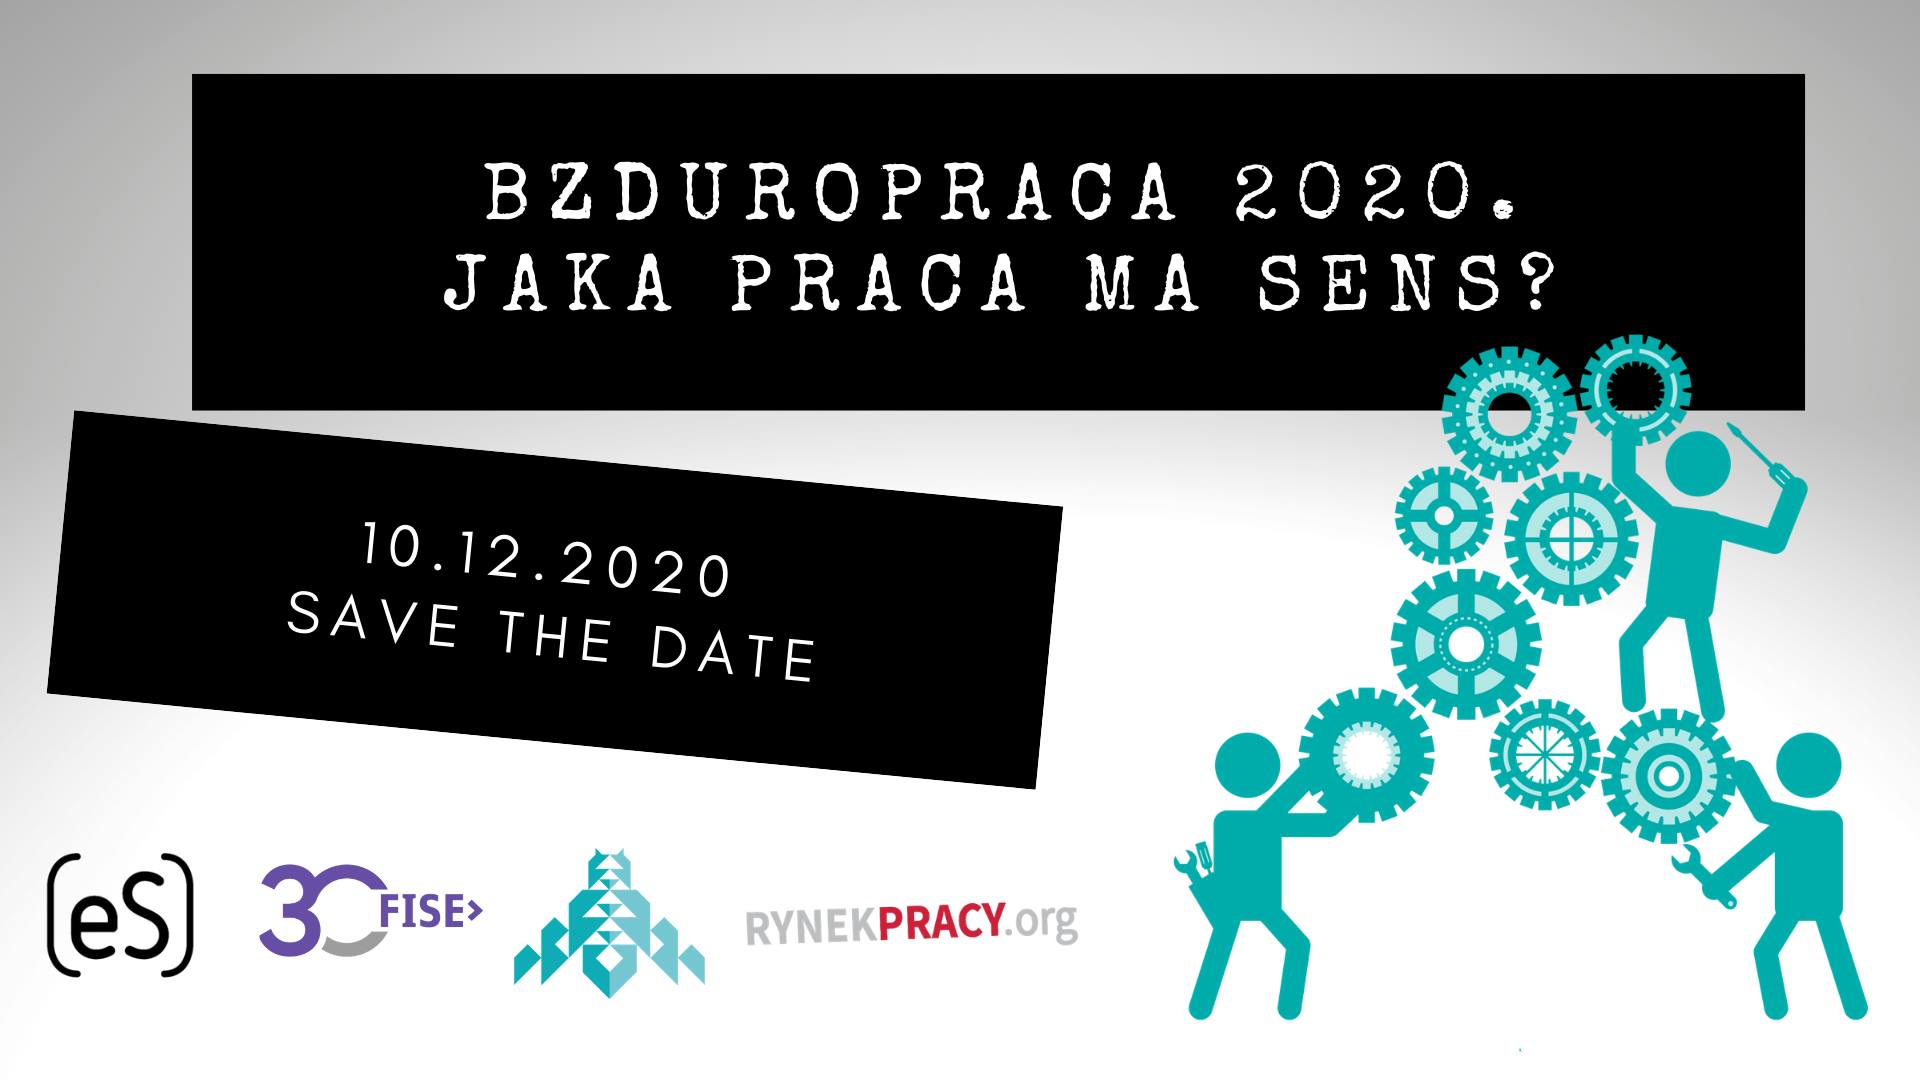 You are currently viewing Bzduropraca 2020. Jaka praca ma sens?